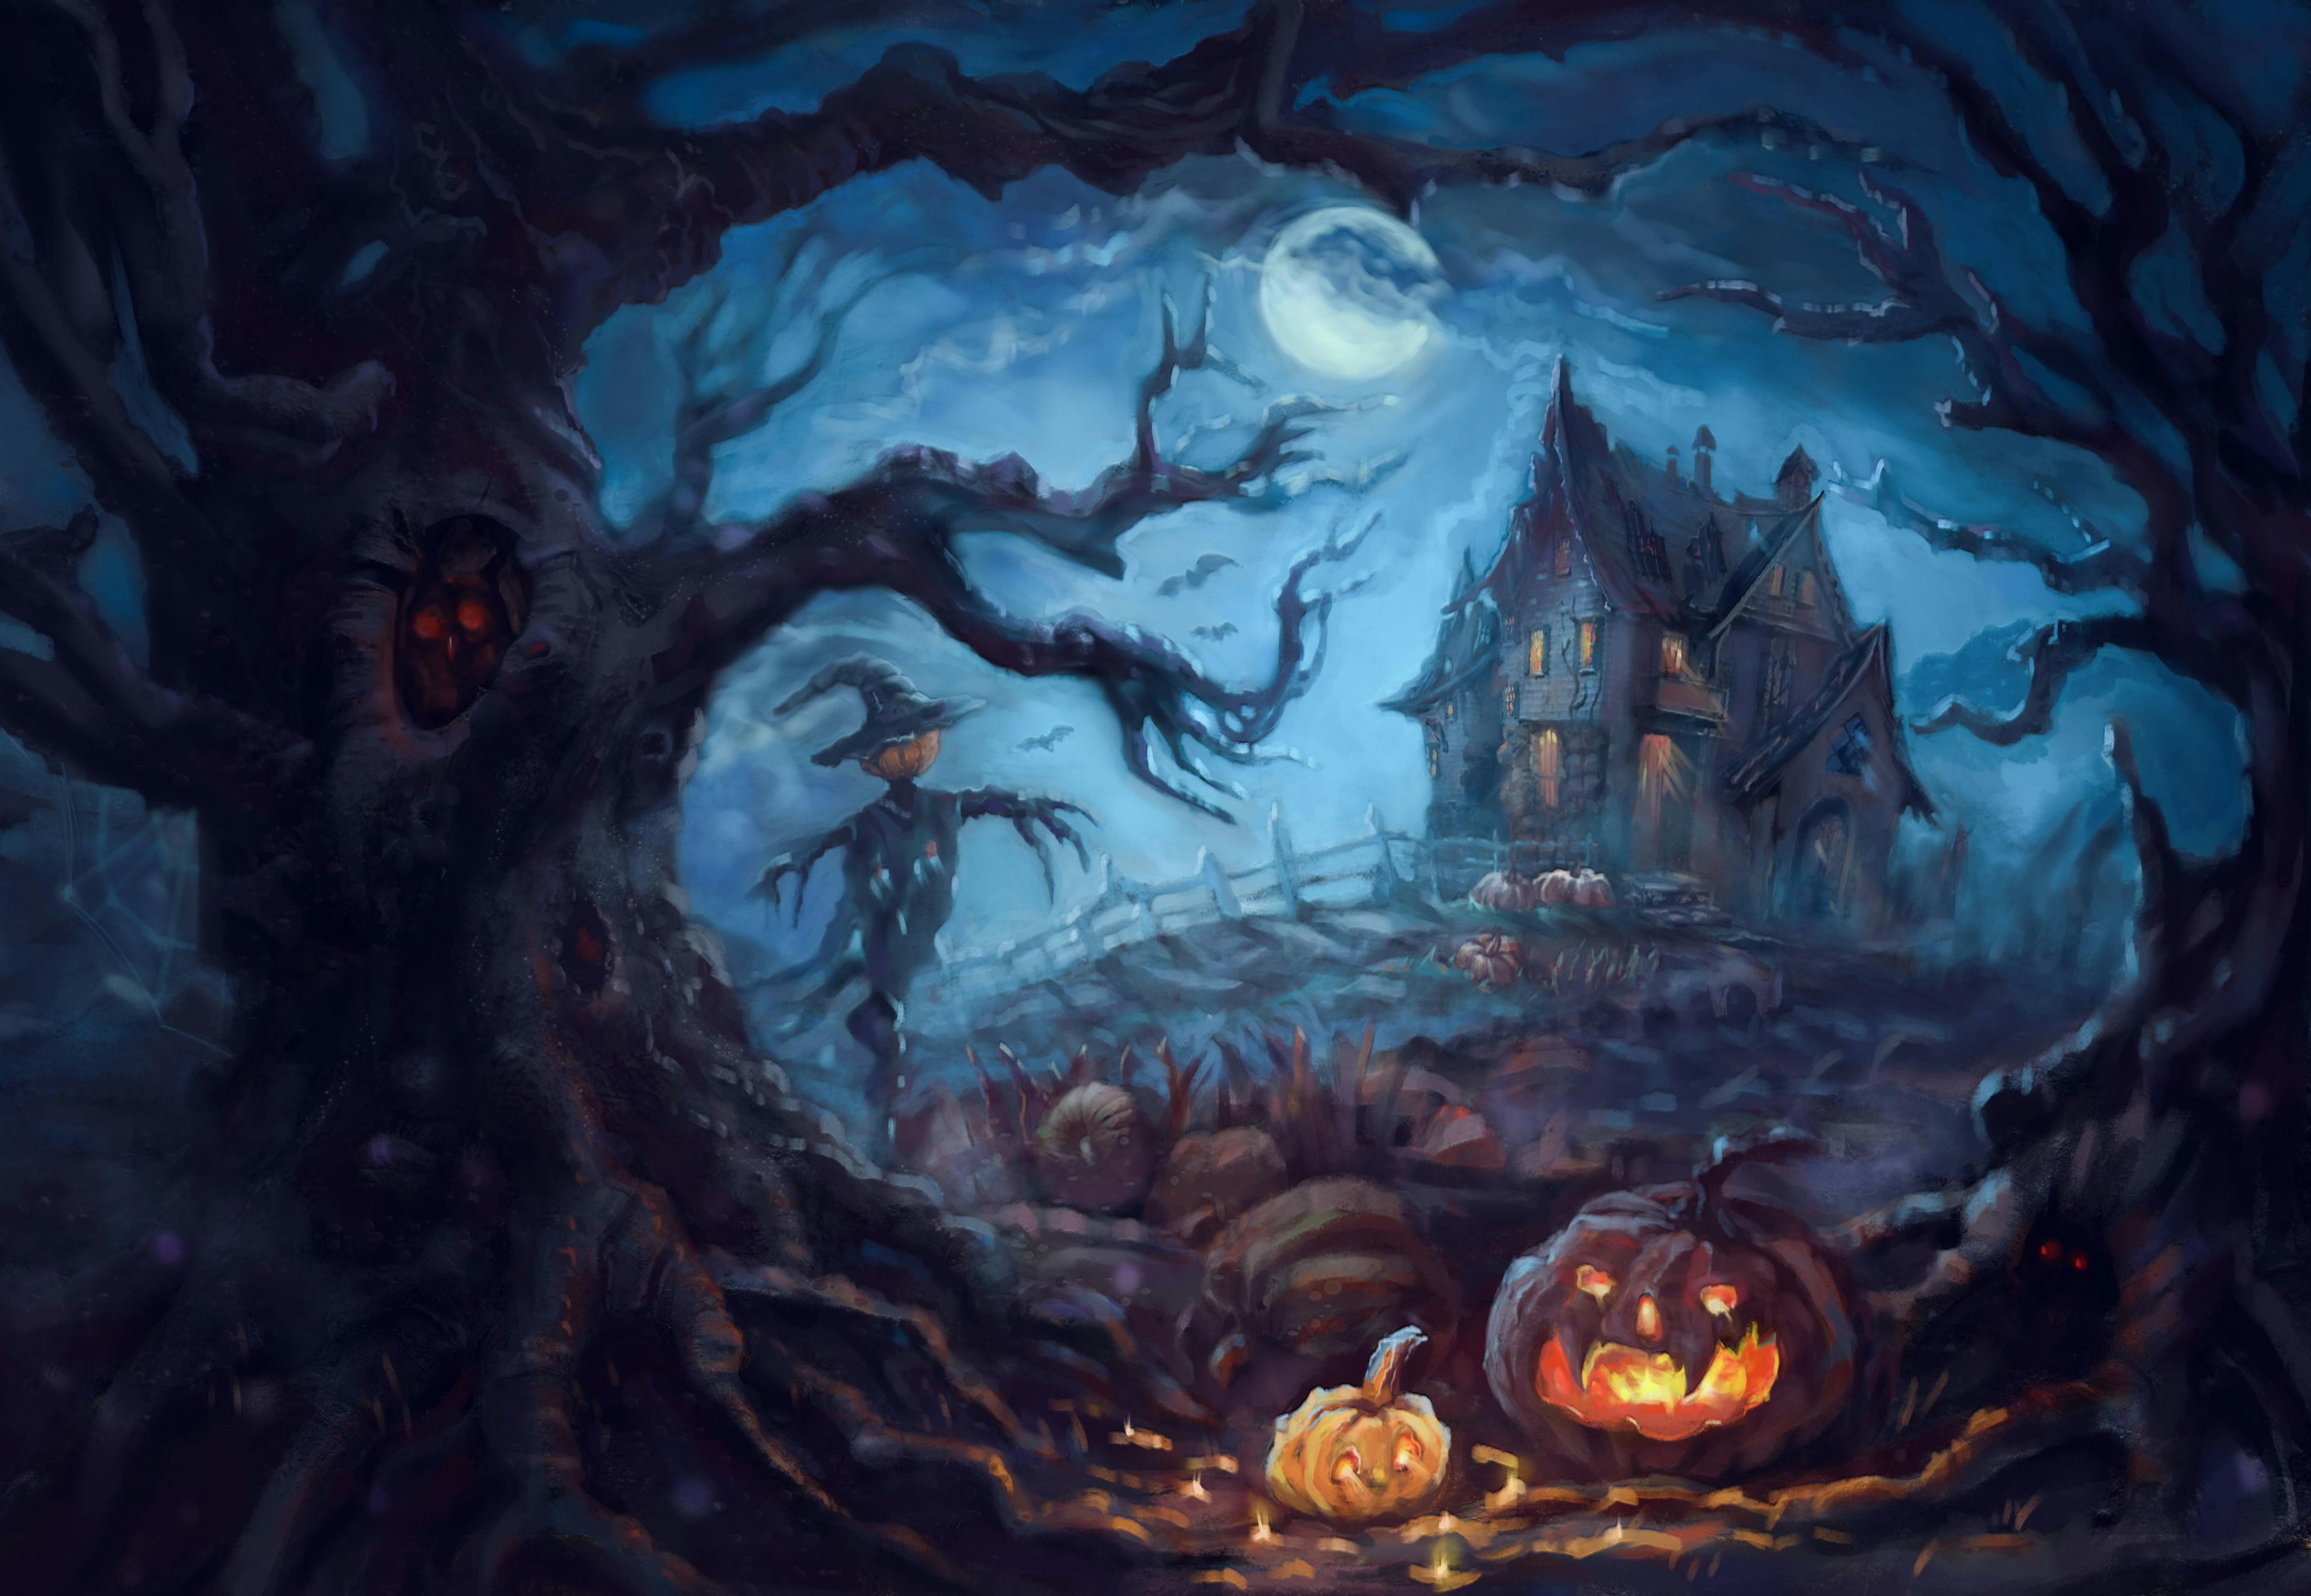 Haunted Houses of Halloween